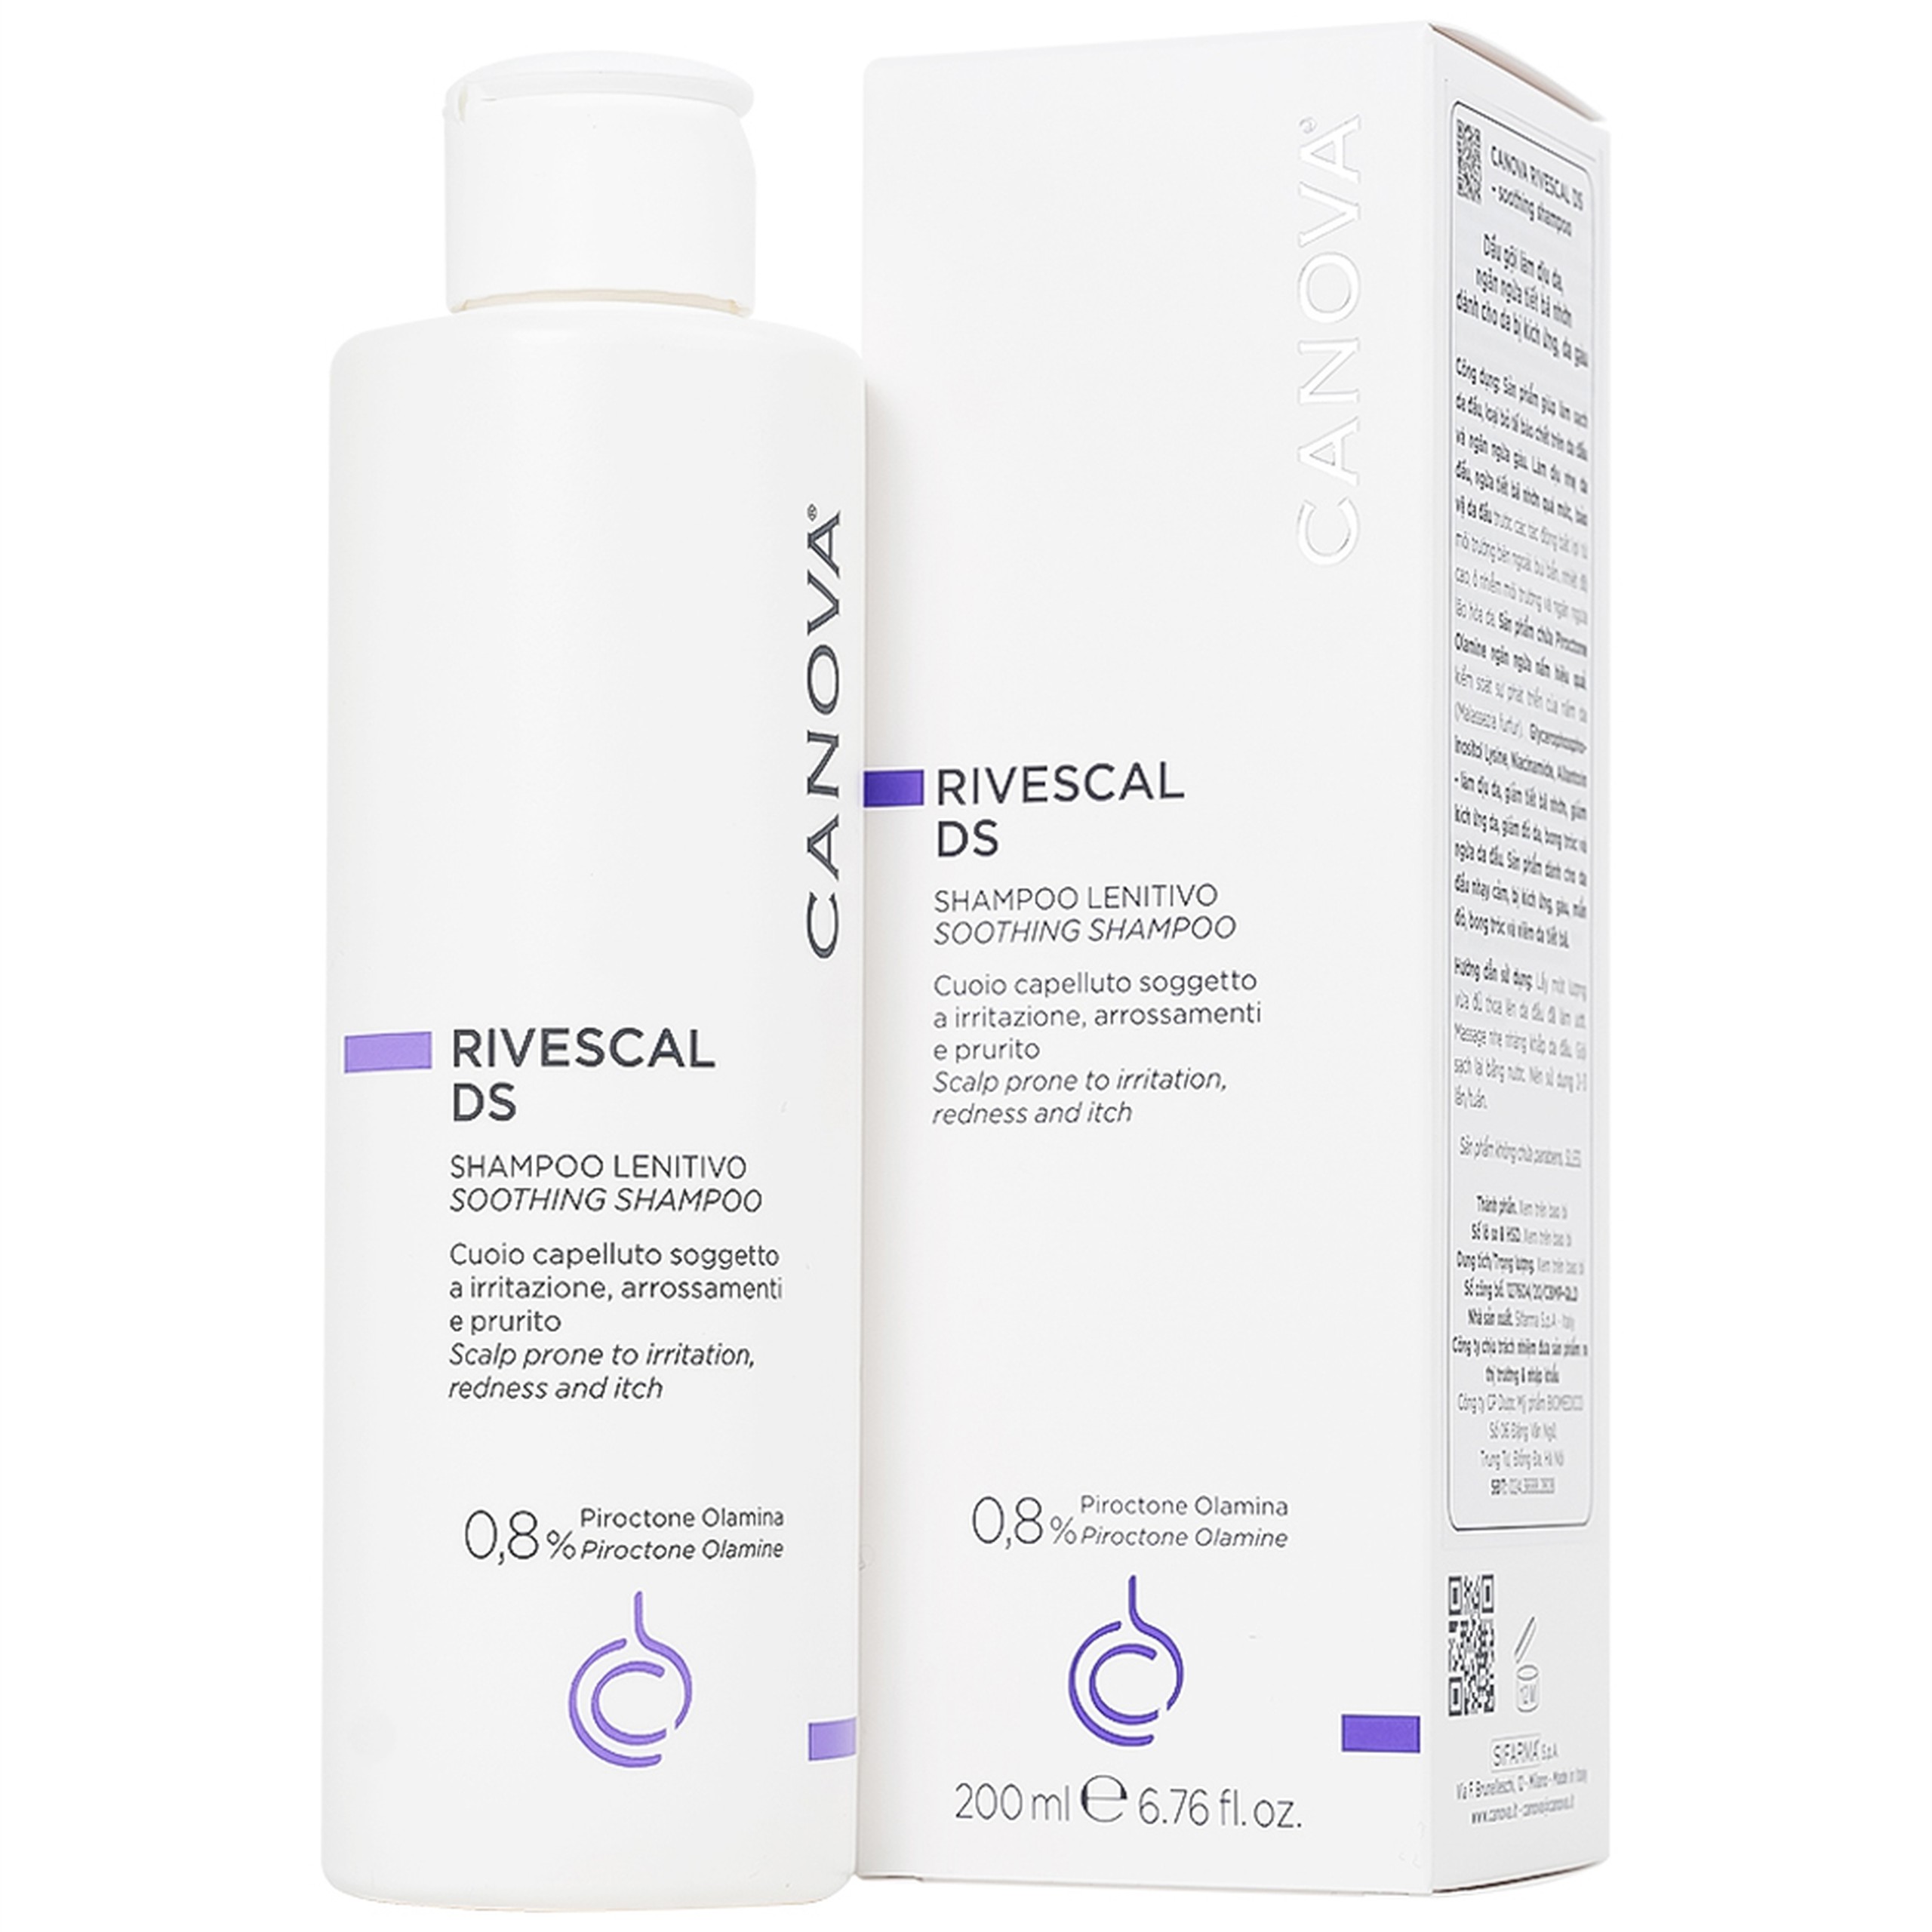 Dầu gội Canova Rivescal DS Soothing Shampoo Biomedico làm dịu da, ngăn ngừa tiết bã nhờn (200ml)